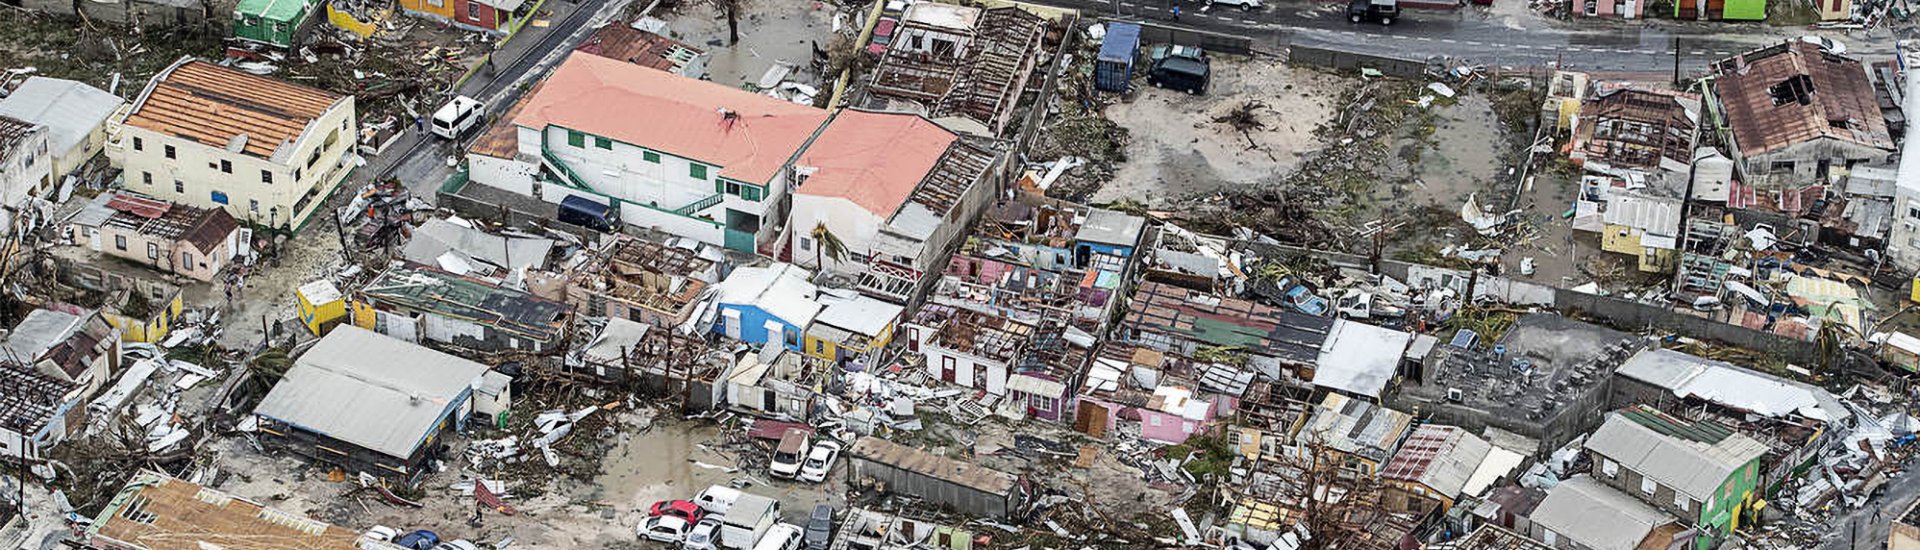 Veel schade op Sint Maarten door orkaan Irma (september 2017). (Foto: Wikimedia Commons | Ministerie van Defensie)